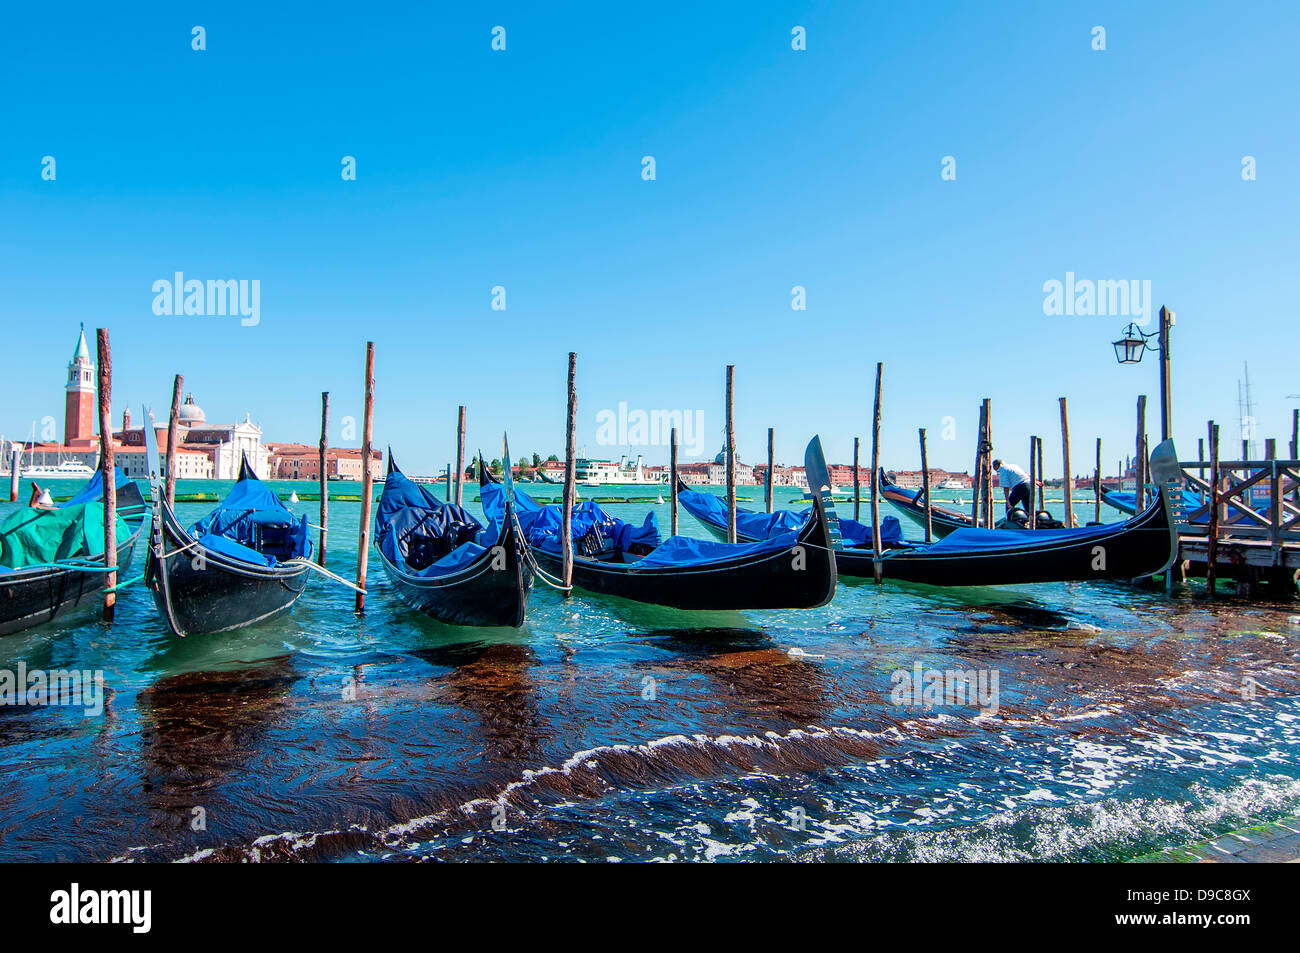 Immagine delle gondole in una bella giornata di sole a Venezia, Italia. Foto Stock